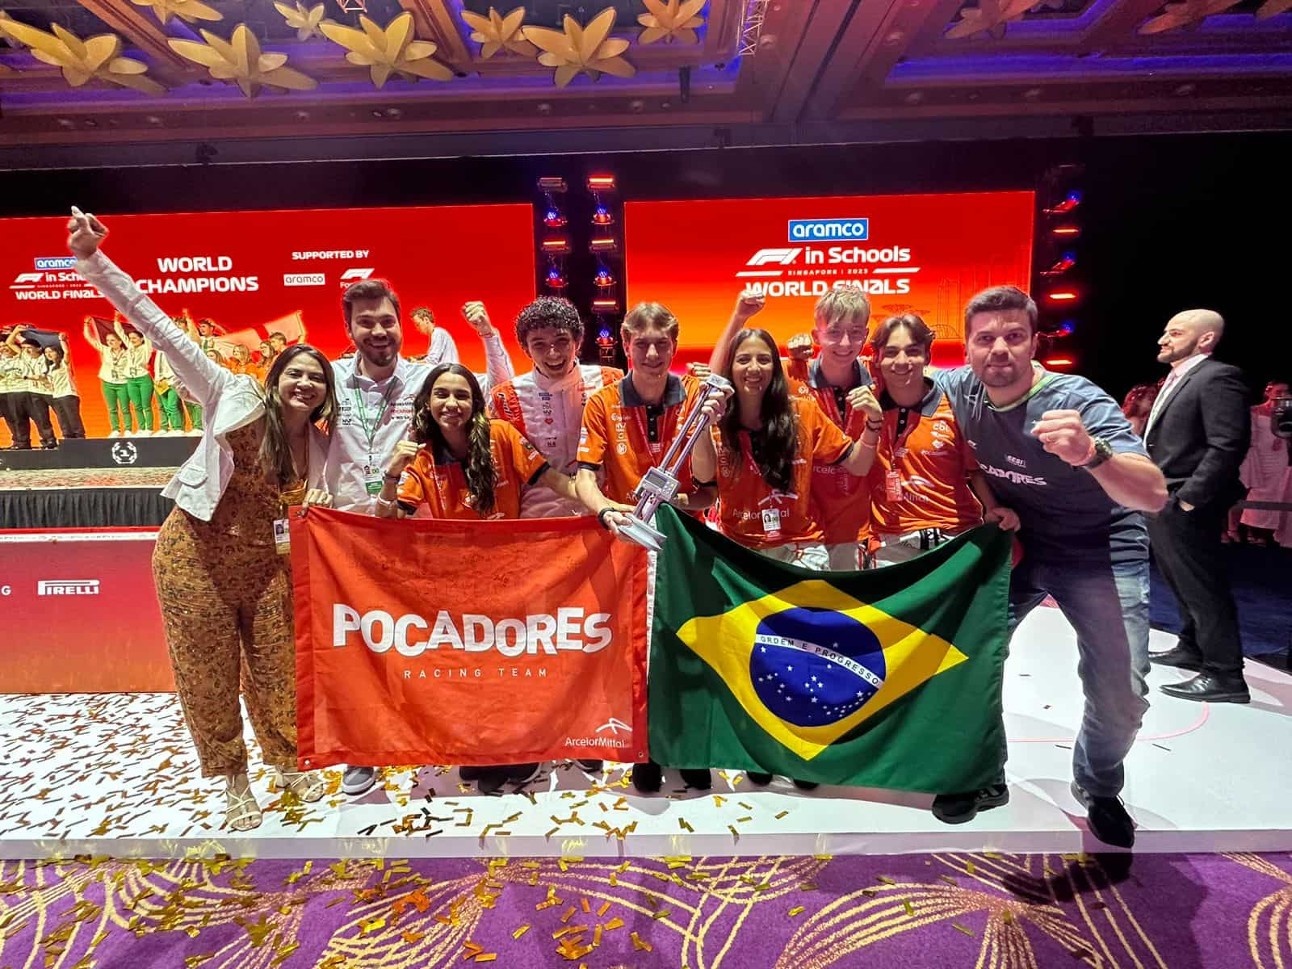 estudantes vestidos de laranja seguram bandeiras do Brasil e com o nome da equipe, Pocadores